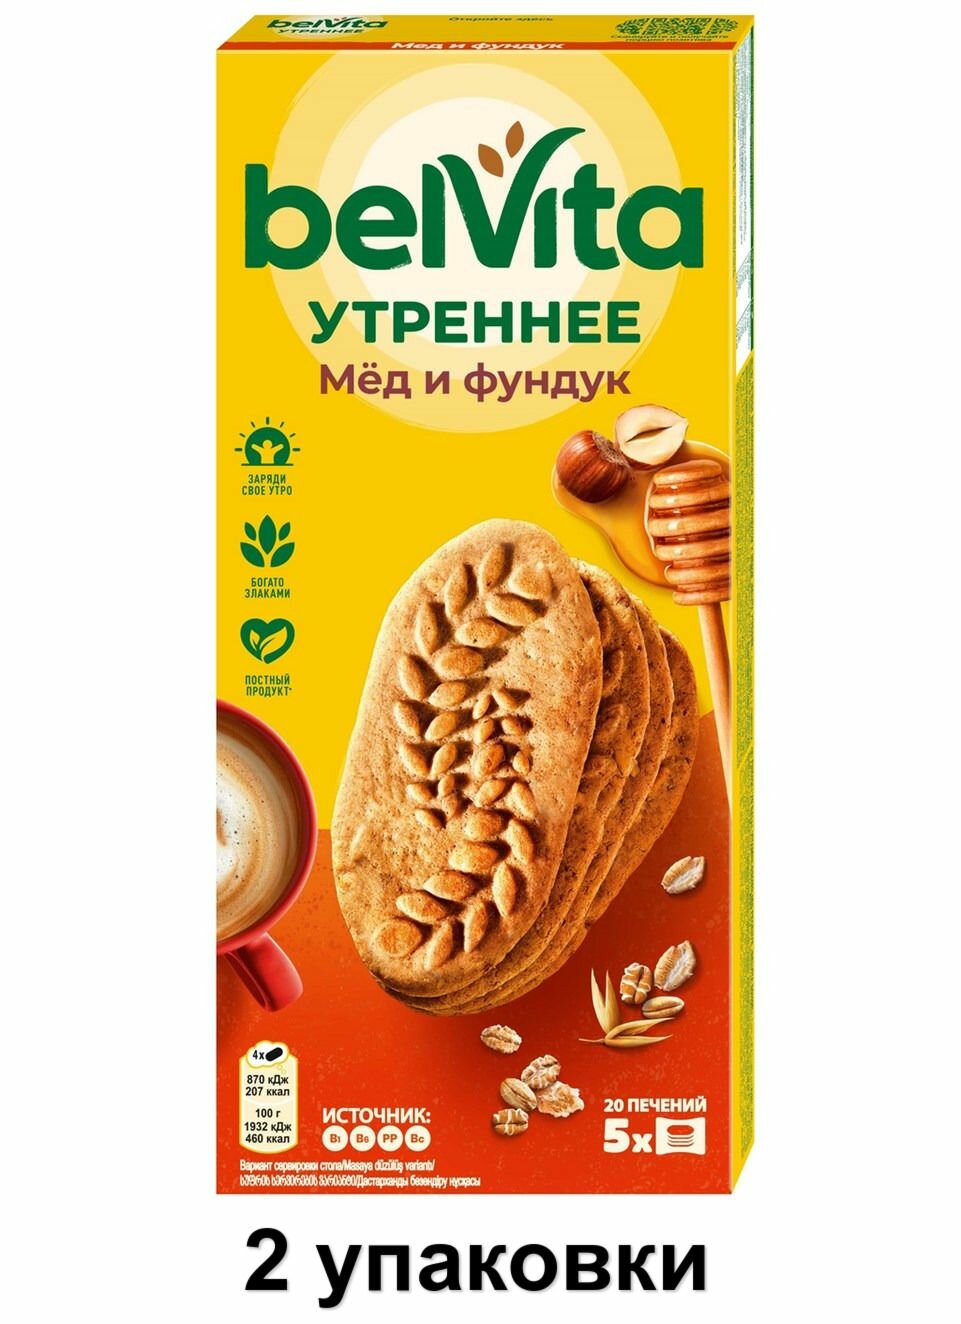 BelVita Печенье Утреннее мёд и фундук, 225 г, 2 уп